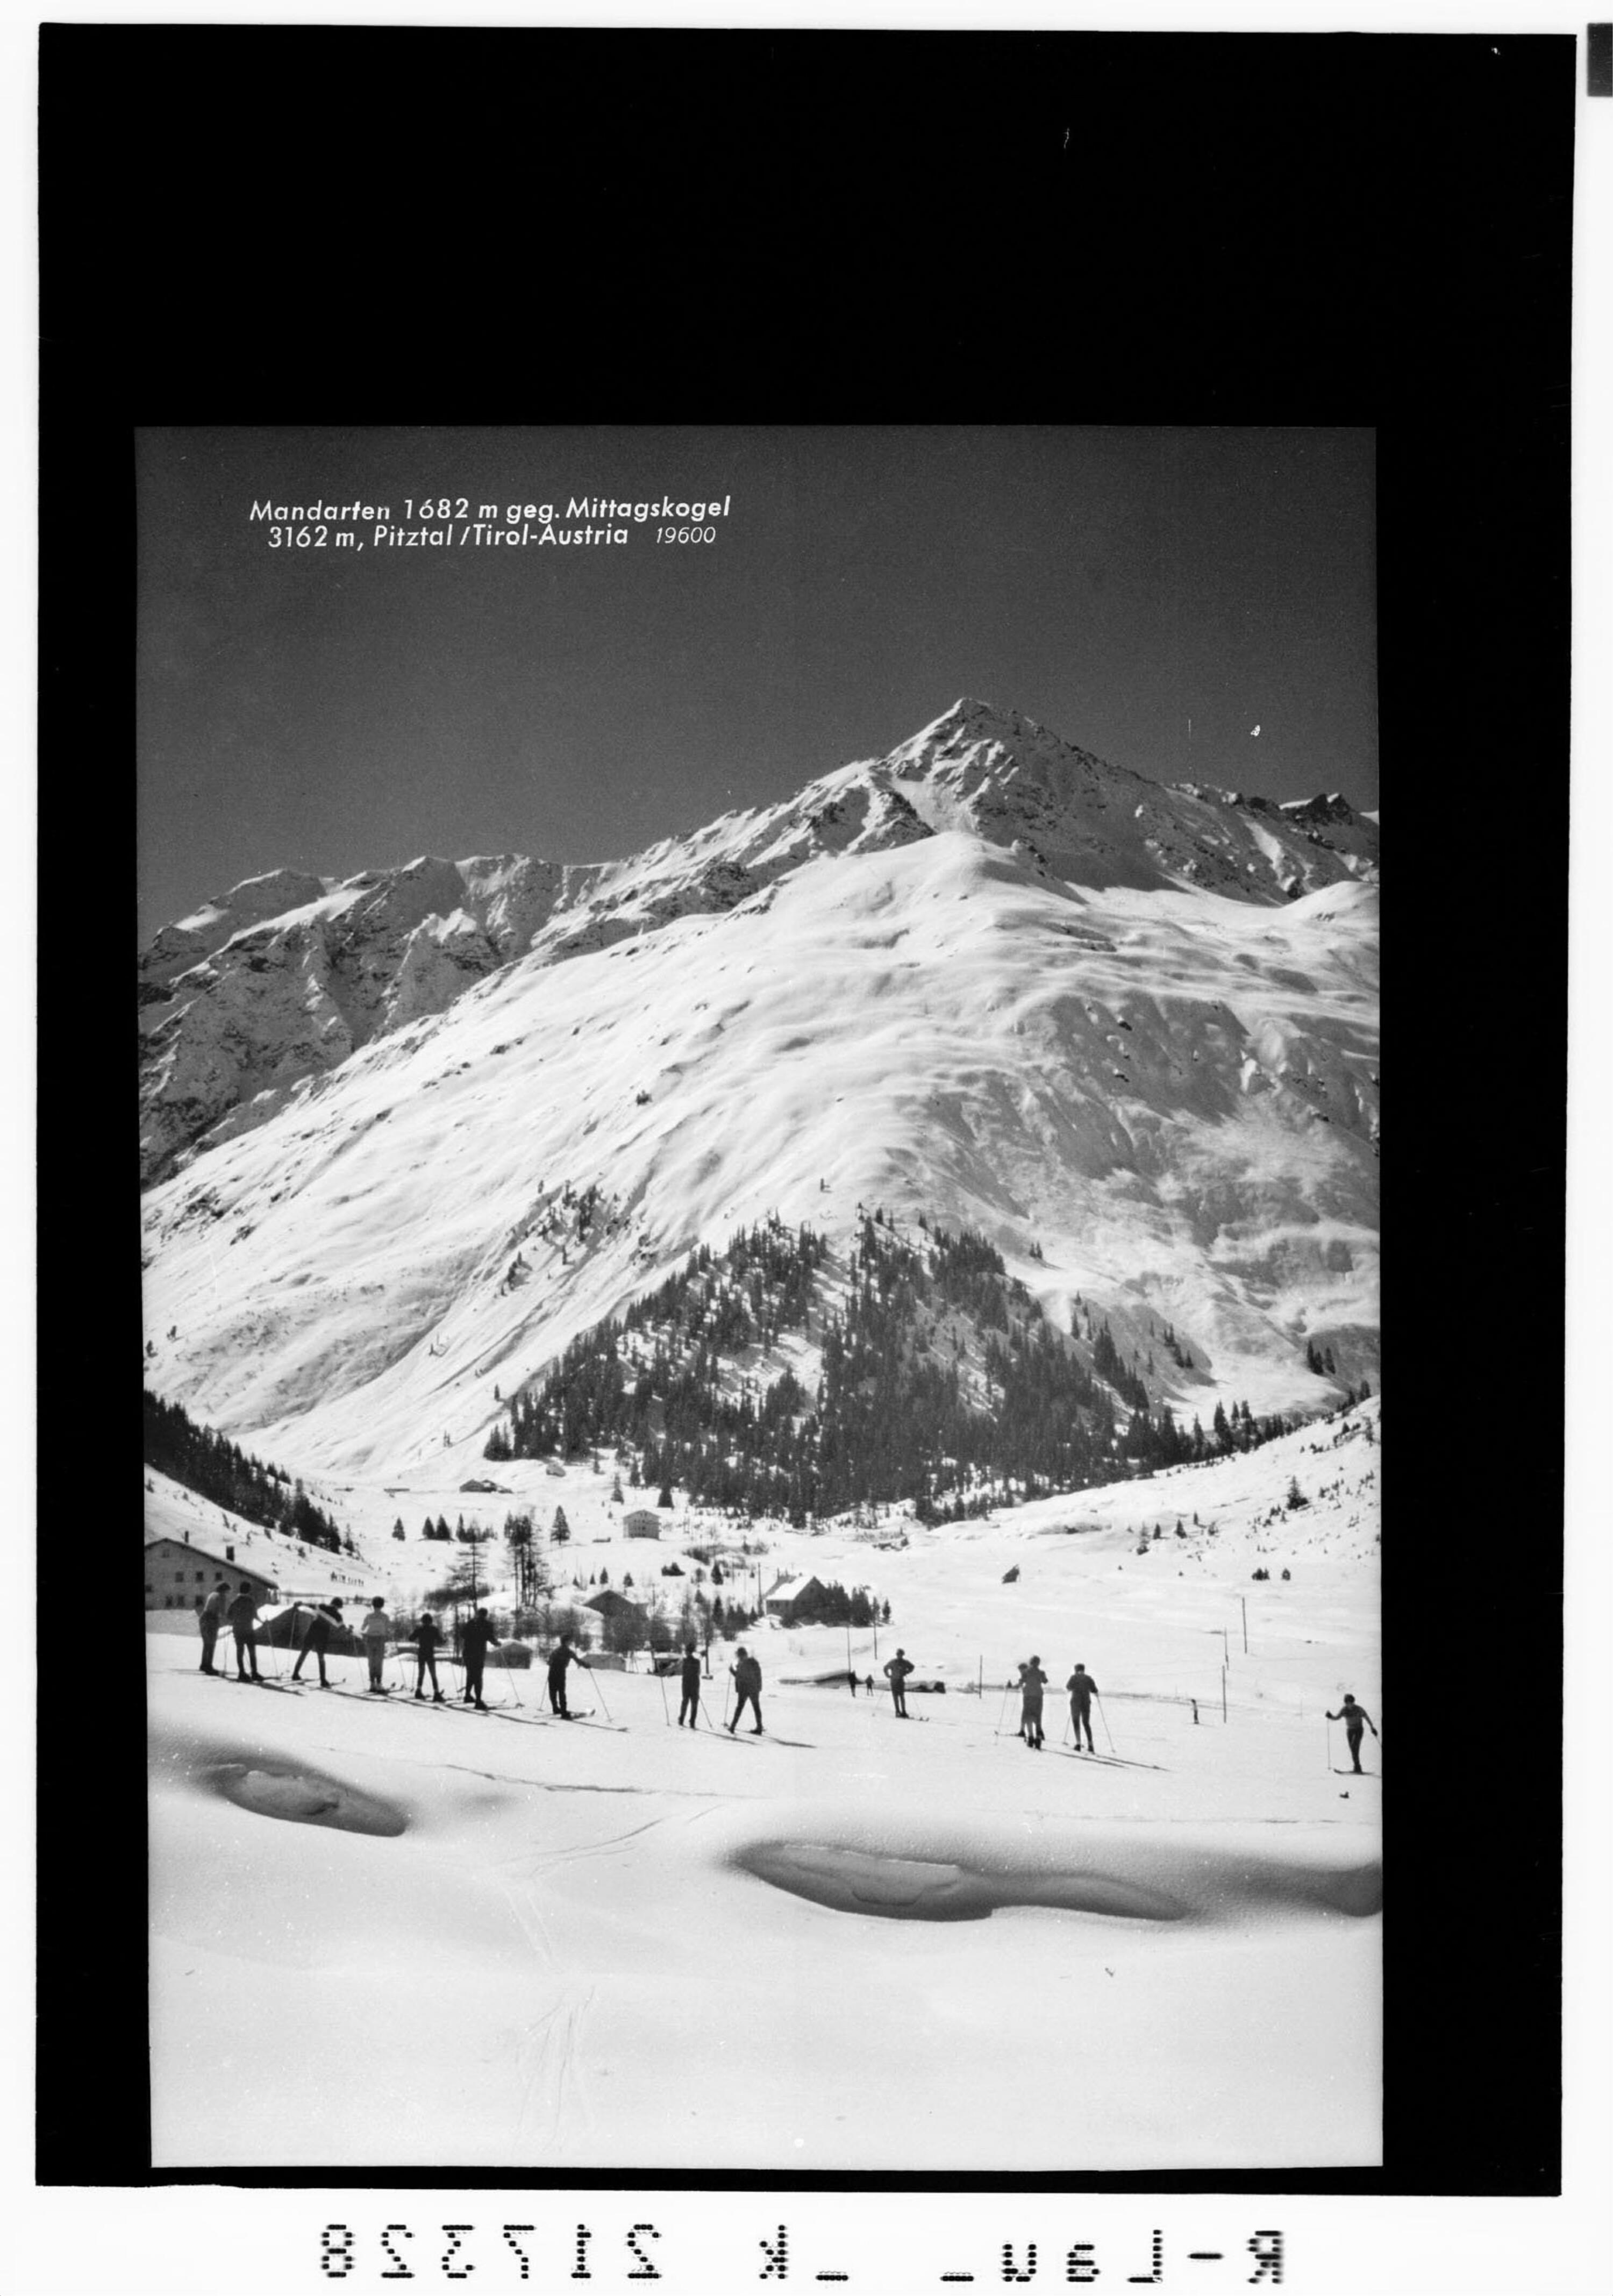 Mandarfen 1682 m gegen Mittagskogel 3162 m, Pitztal / Tirol Austria></div>


    <hr>
    <div class=